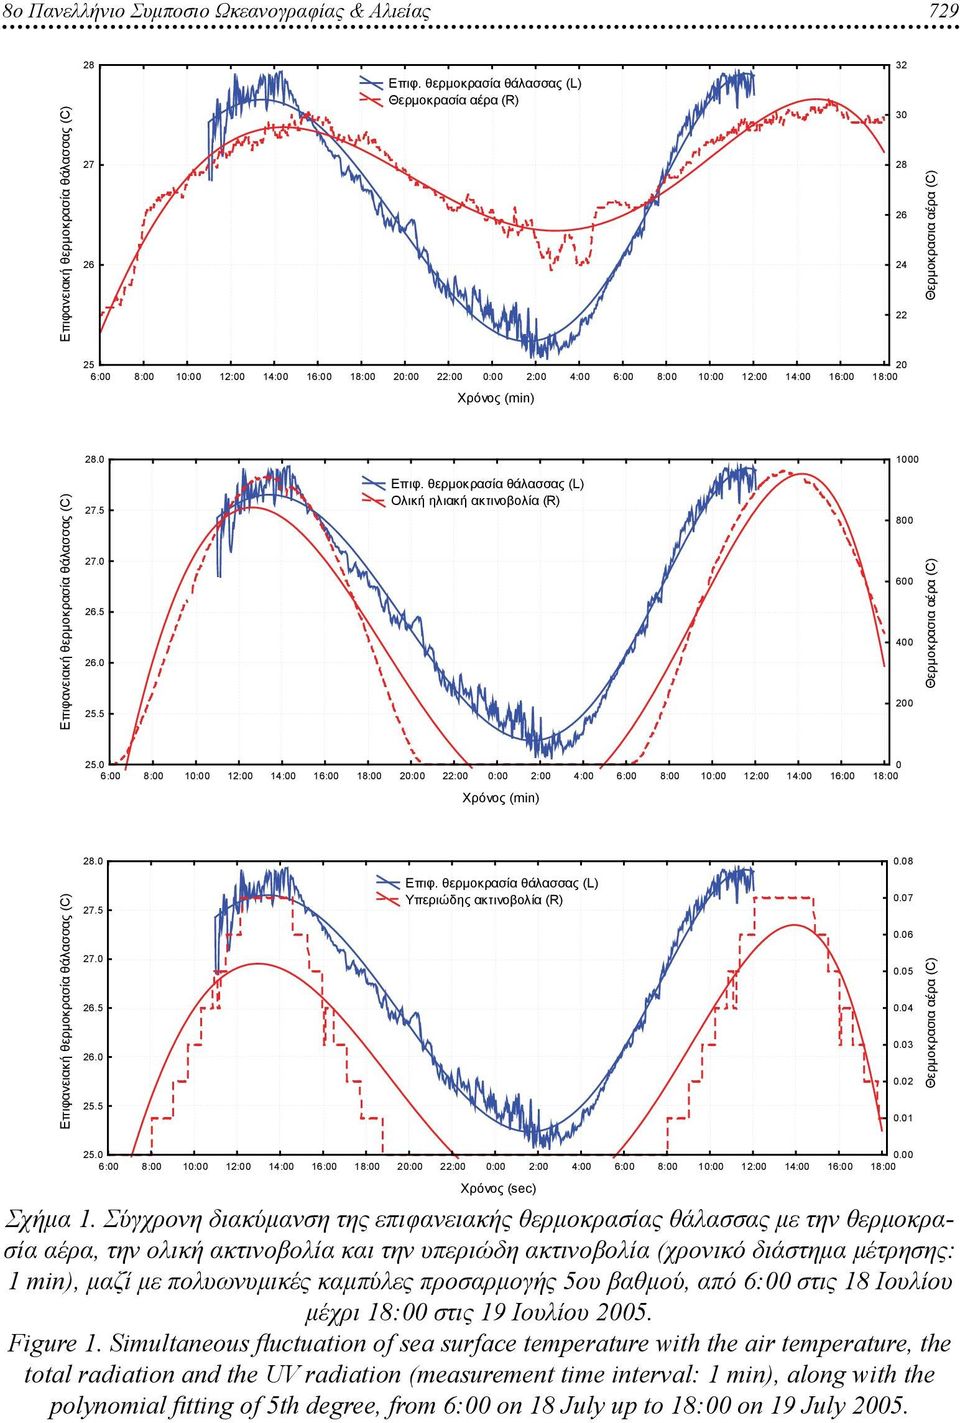 Σύγχρονη διακύμανση της επιφανειακής θερμοκρασίας θάλασσας με την θερμοκρασία αέρα, την ολική ακτινοβολία και την υπεριώδη ακτινοβολία (χρονικό διάστημα μέτρησης: 1 min), μαζί με πολυωνυμικές